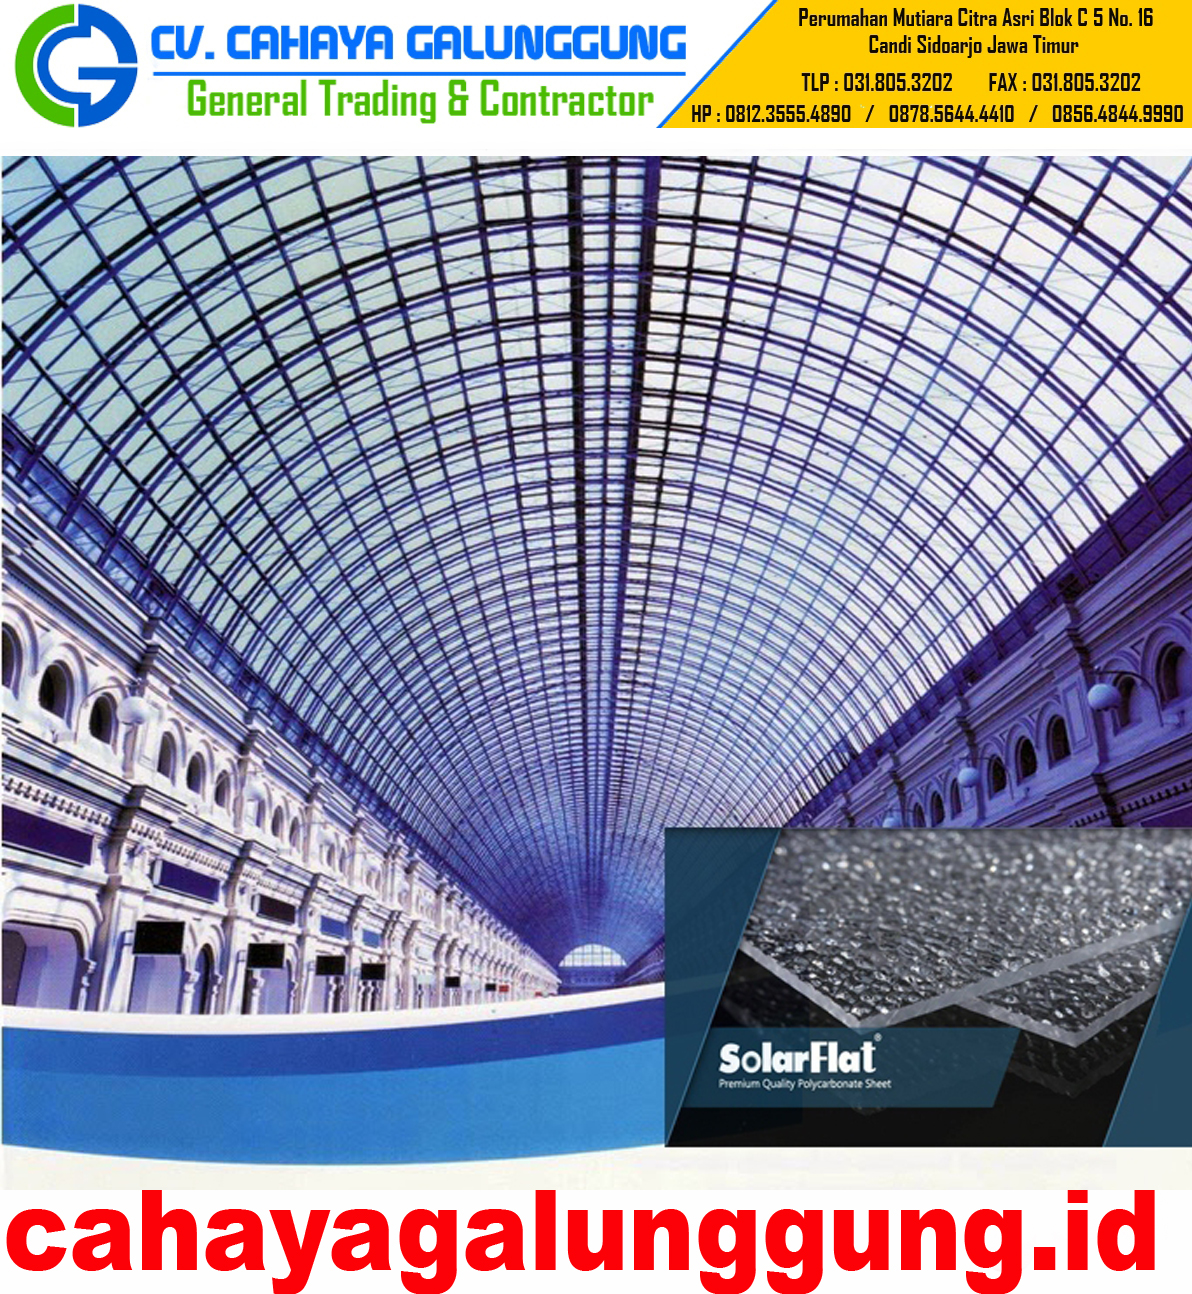  Harga  Atap Transparan Solarflat  Terbaru CV CAHAYA GALUNGGUNG